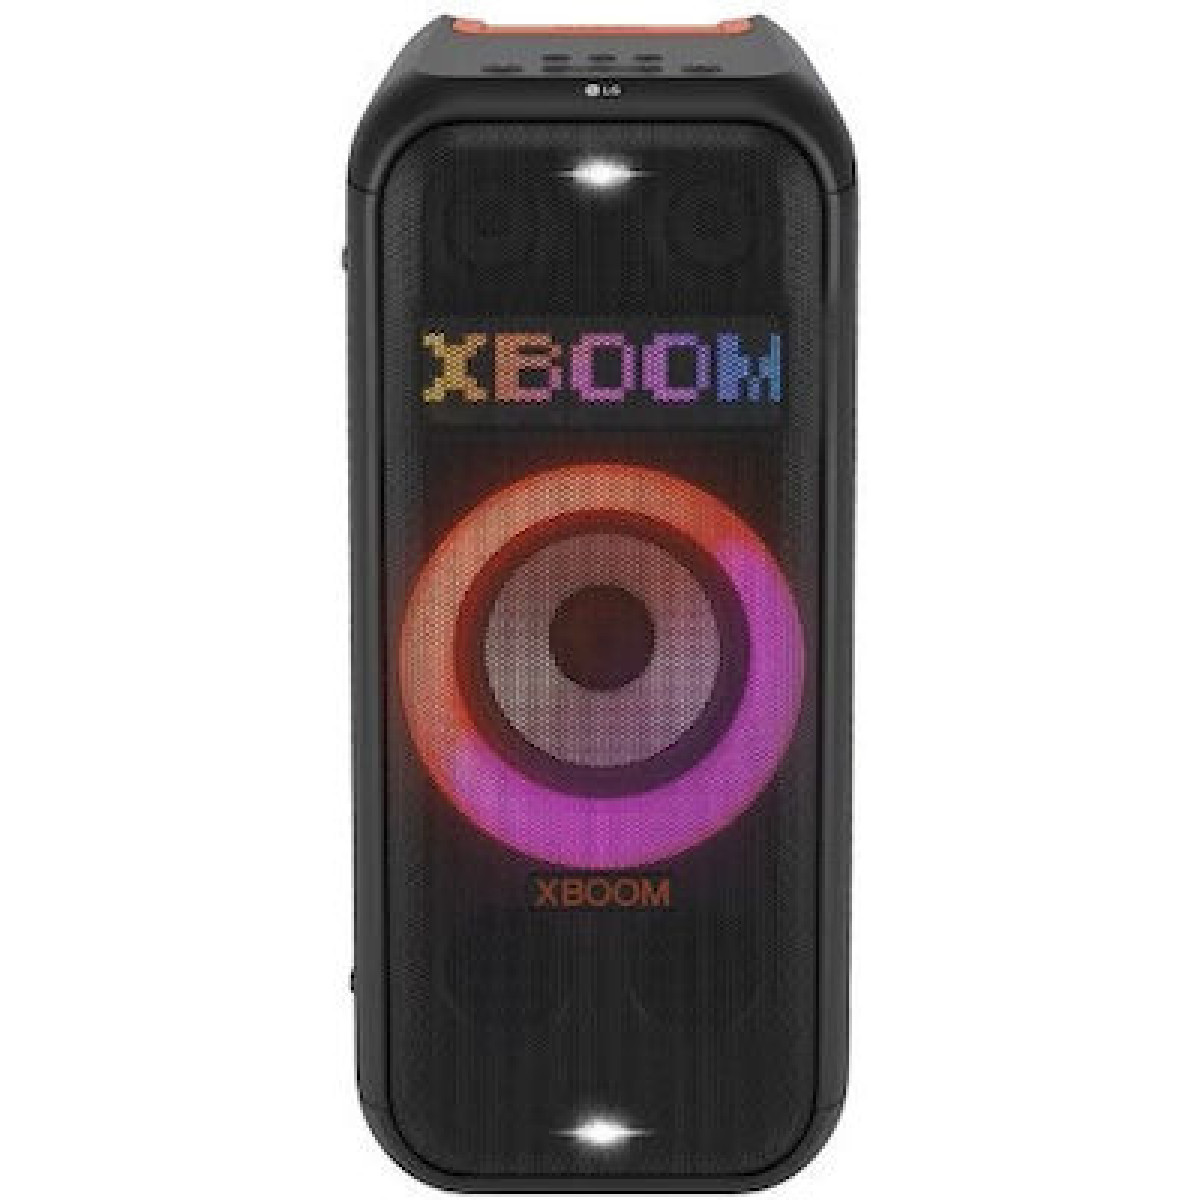 Ηχείο LG XL7S με λειτουργία Karaoke Xboom σε Μαύρο Χρώμα Ήχος